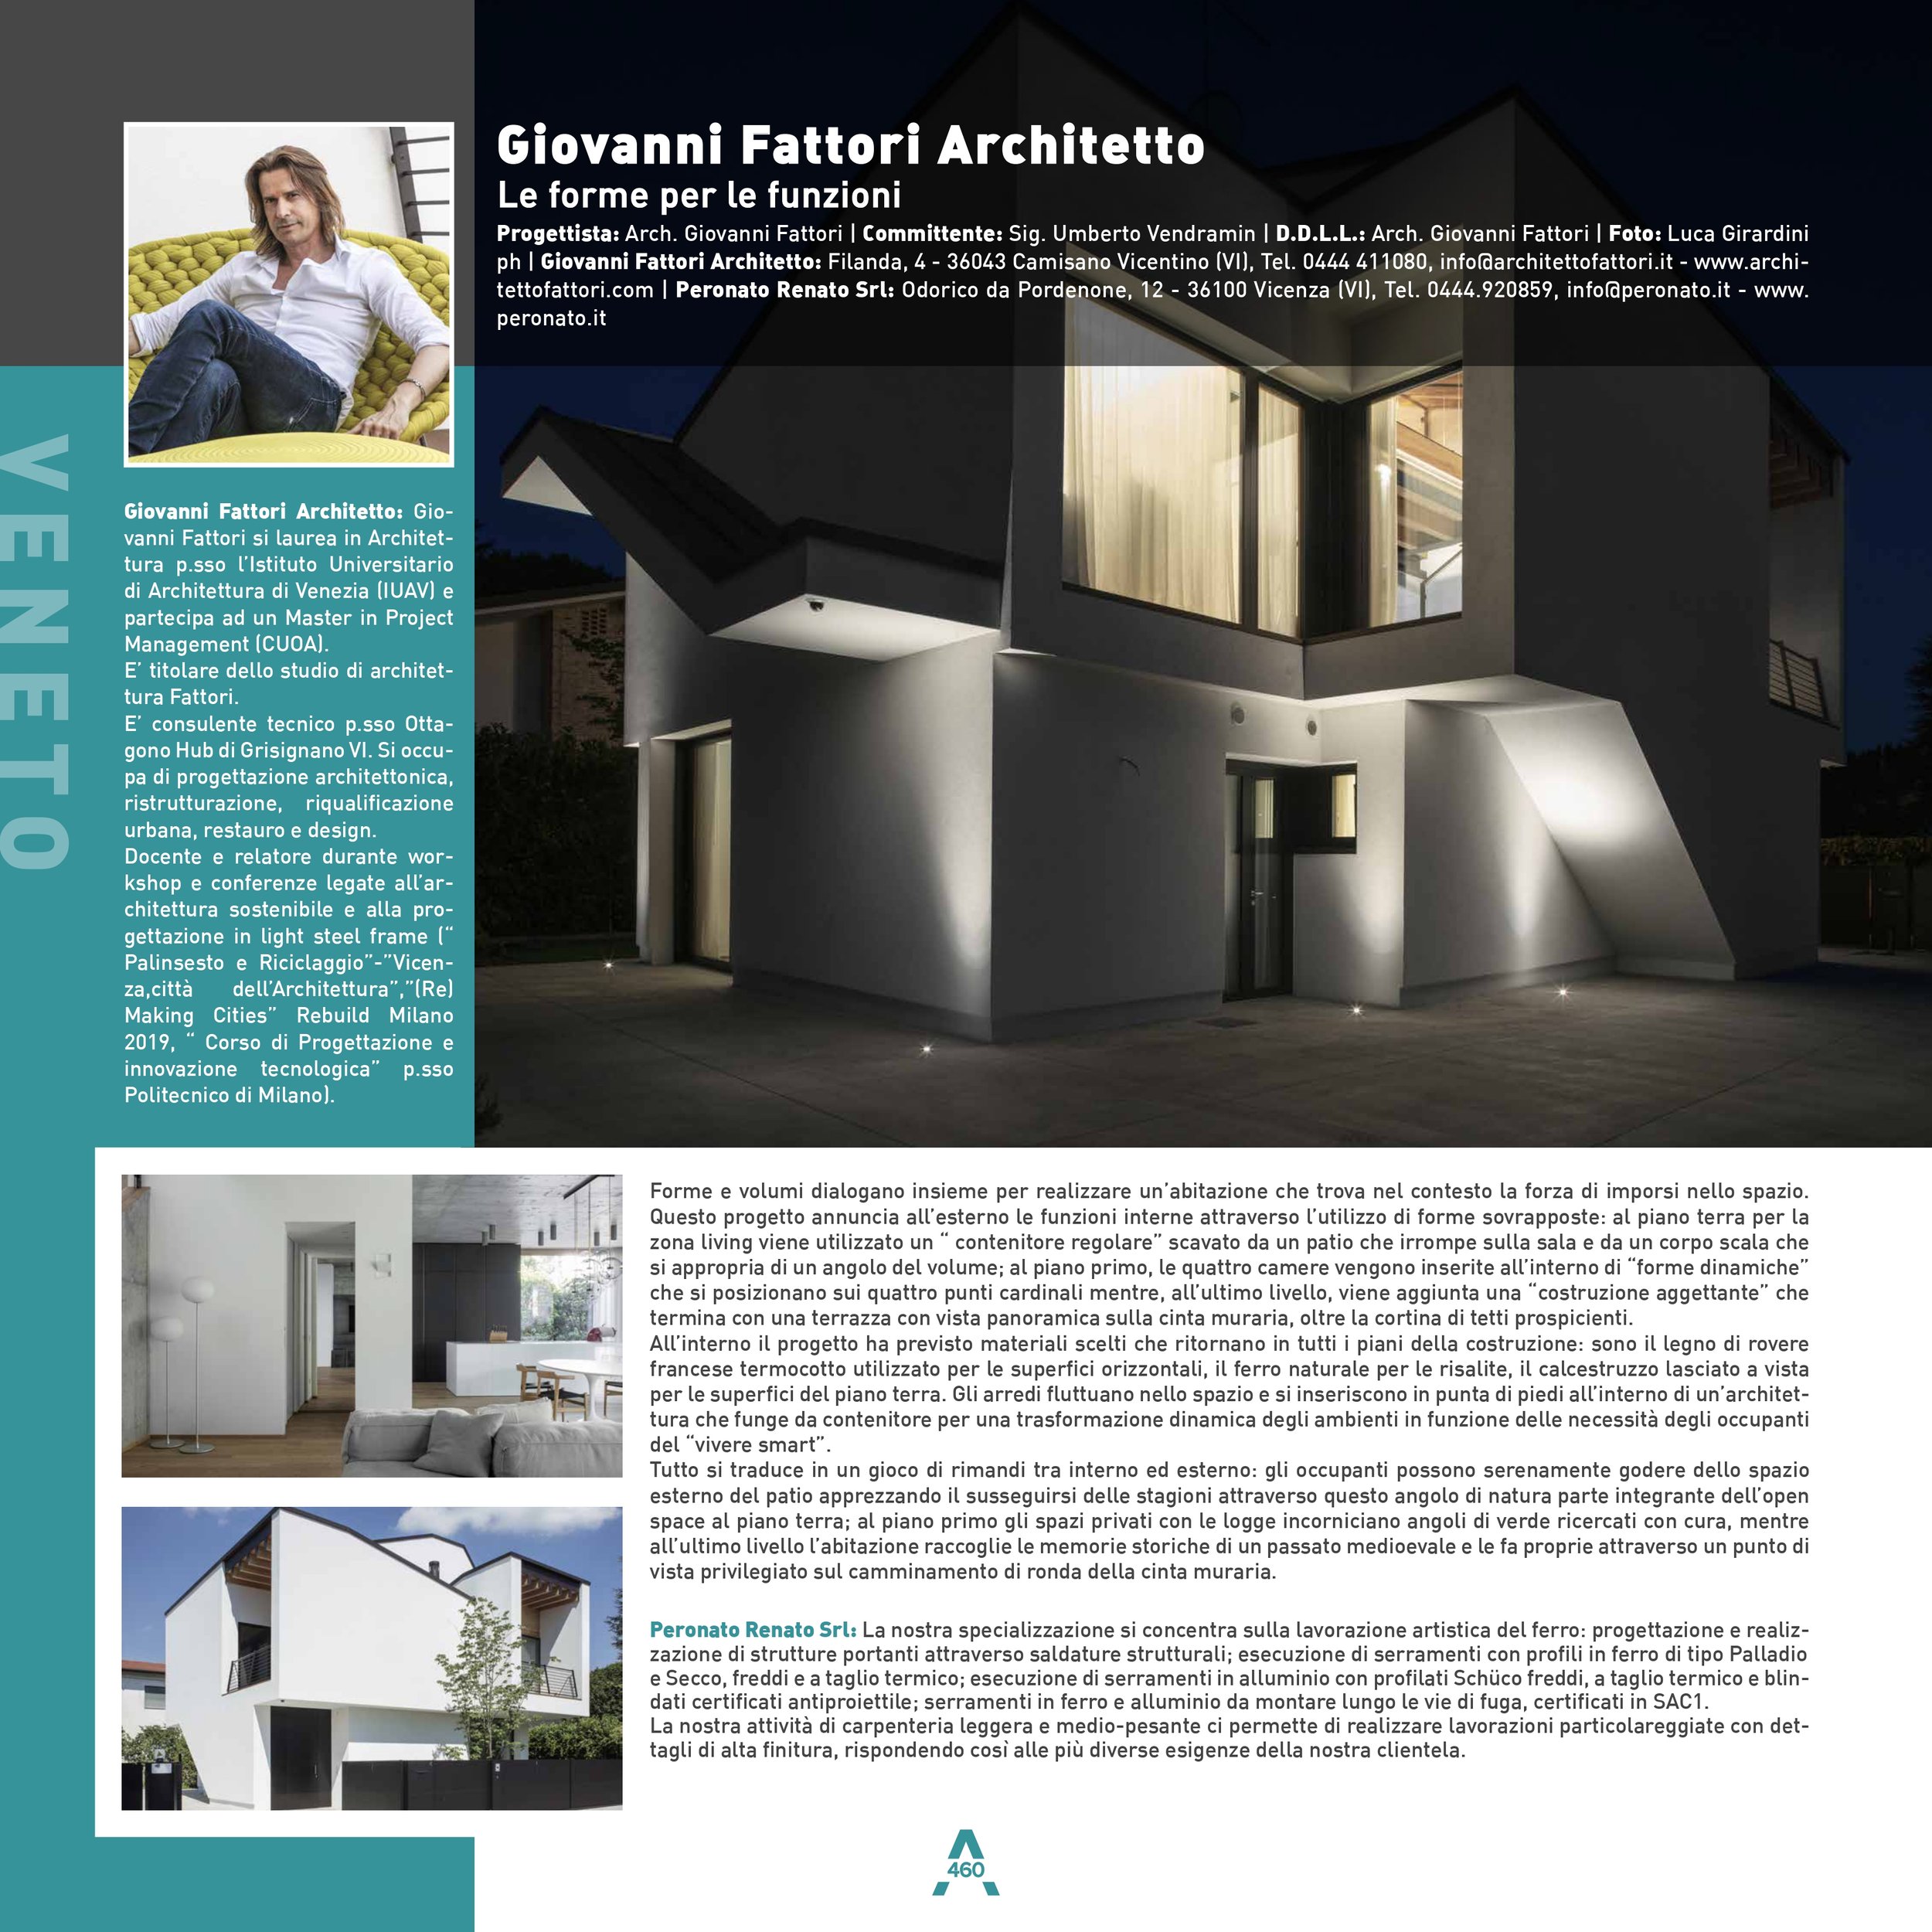 bozza_Giovanni Fattori Architetto-2_page-0001.jpg